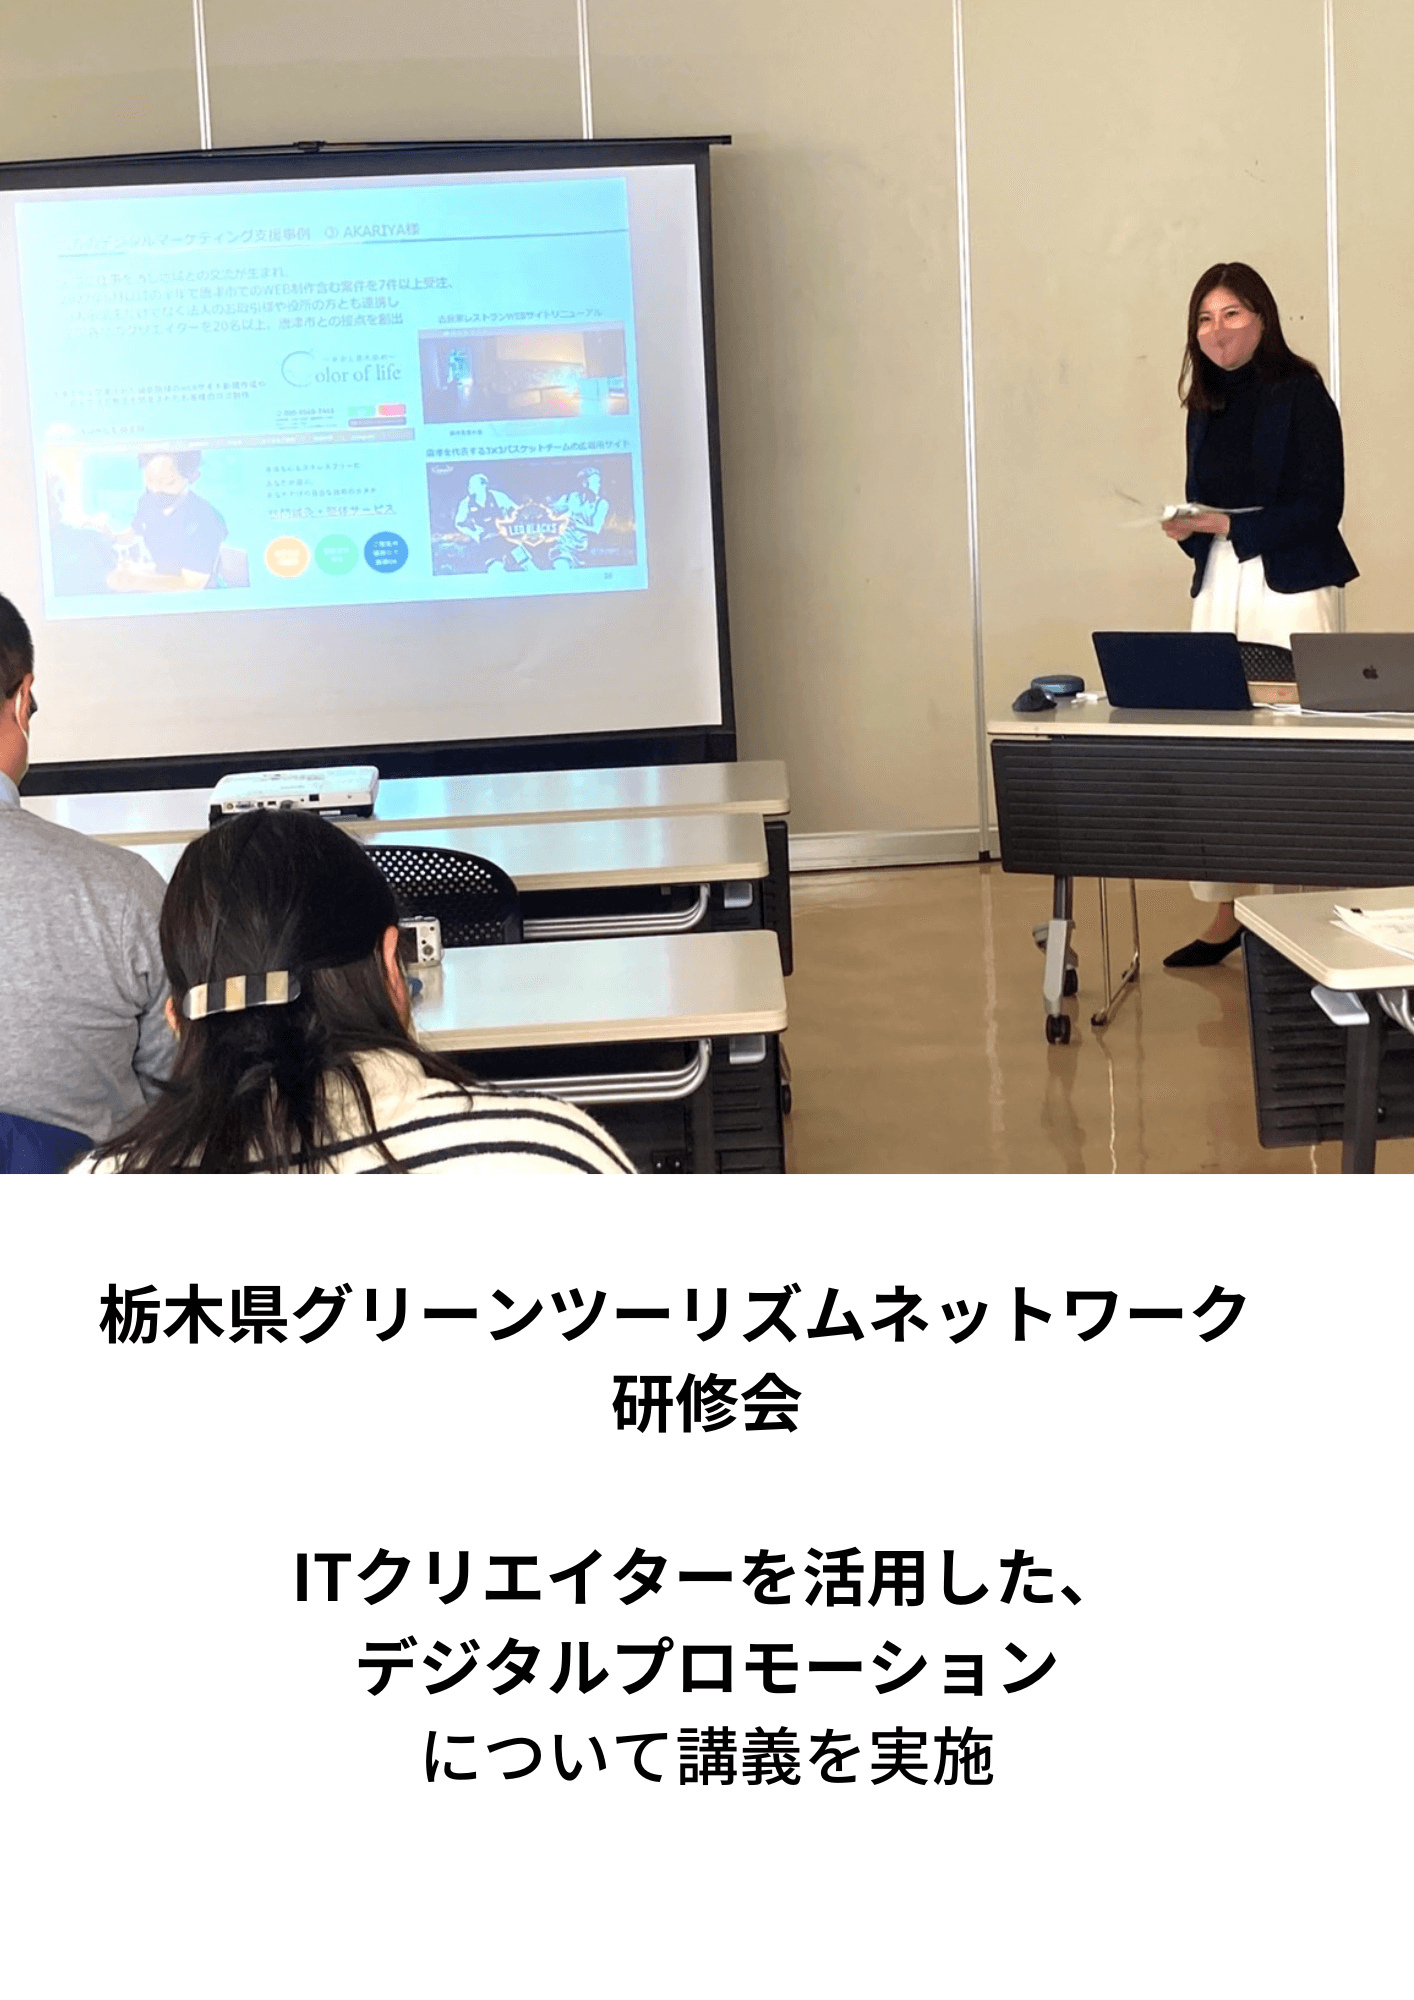 栃木県グリーンツーリズムネットワーク研修会 ITクリエイターを活用した、デジタルプロモーションについて講義の実施